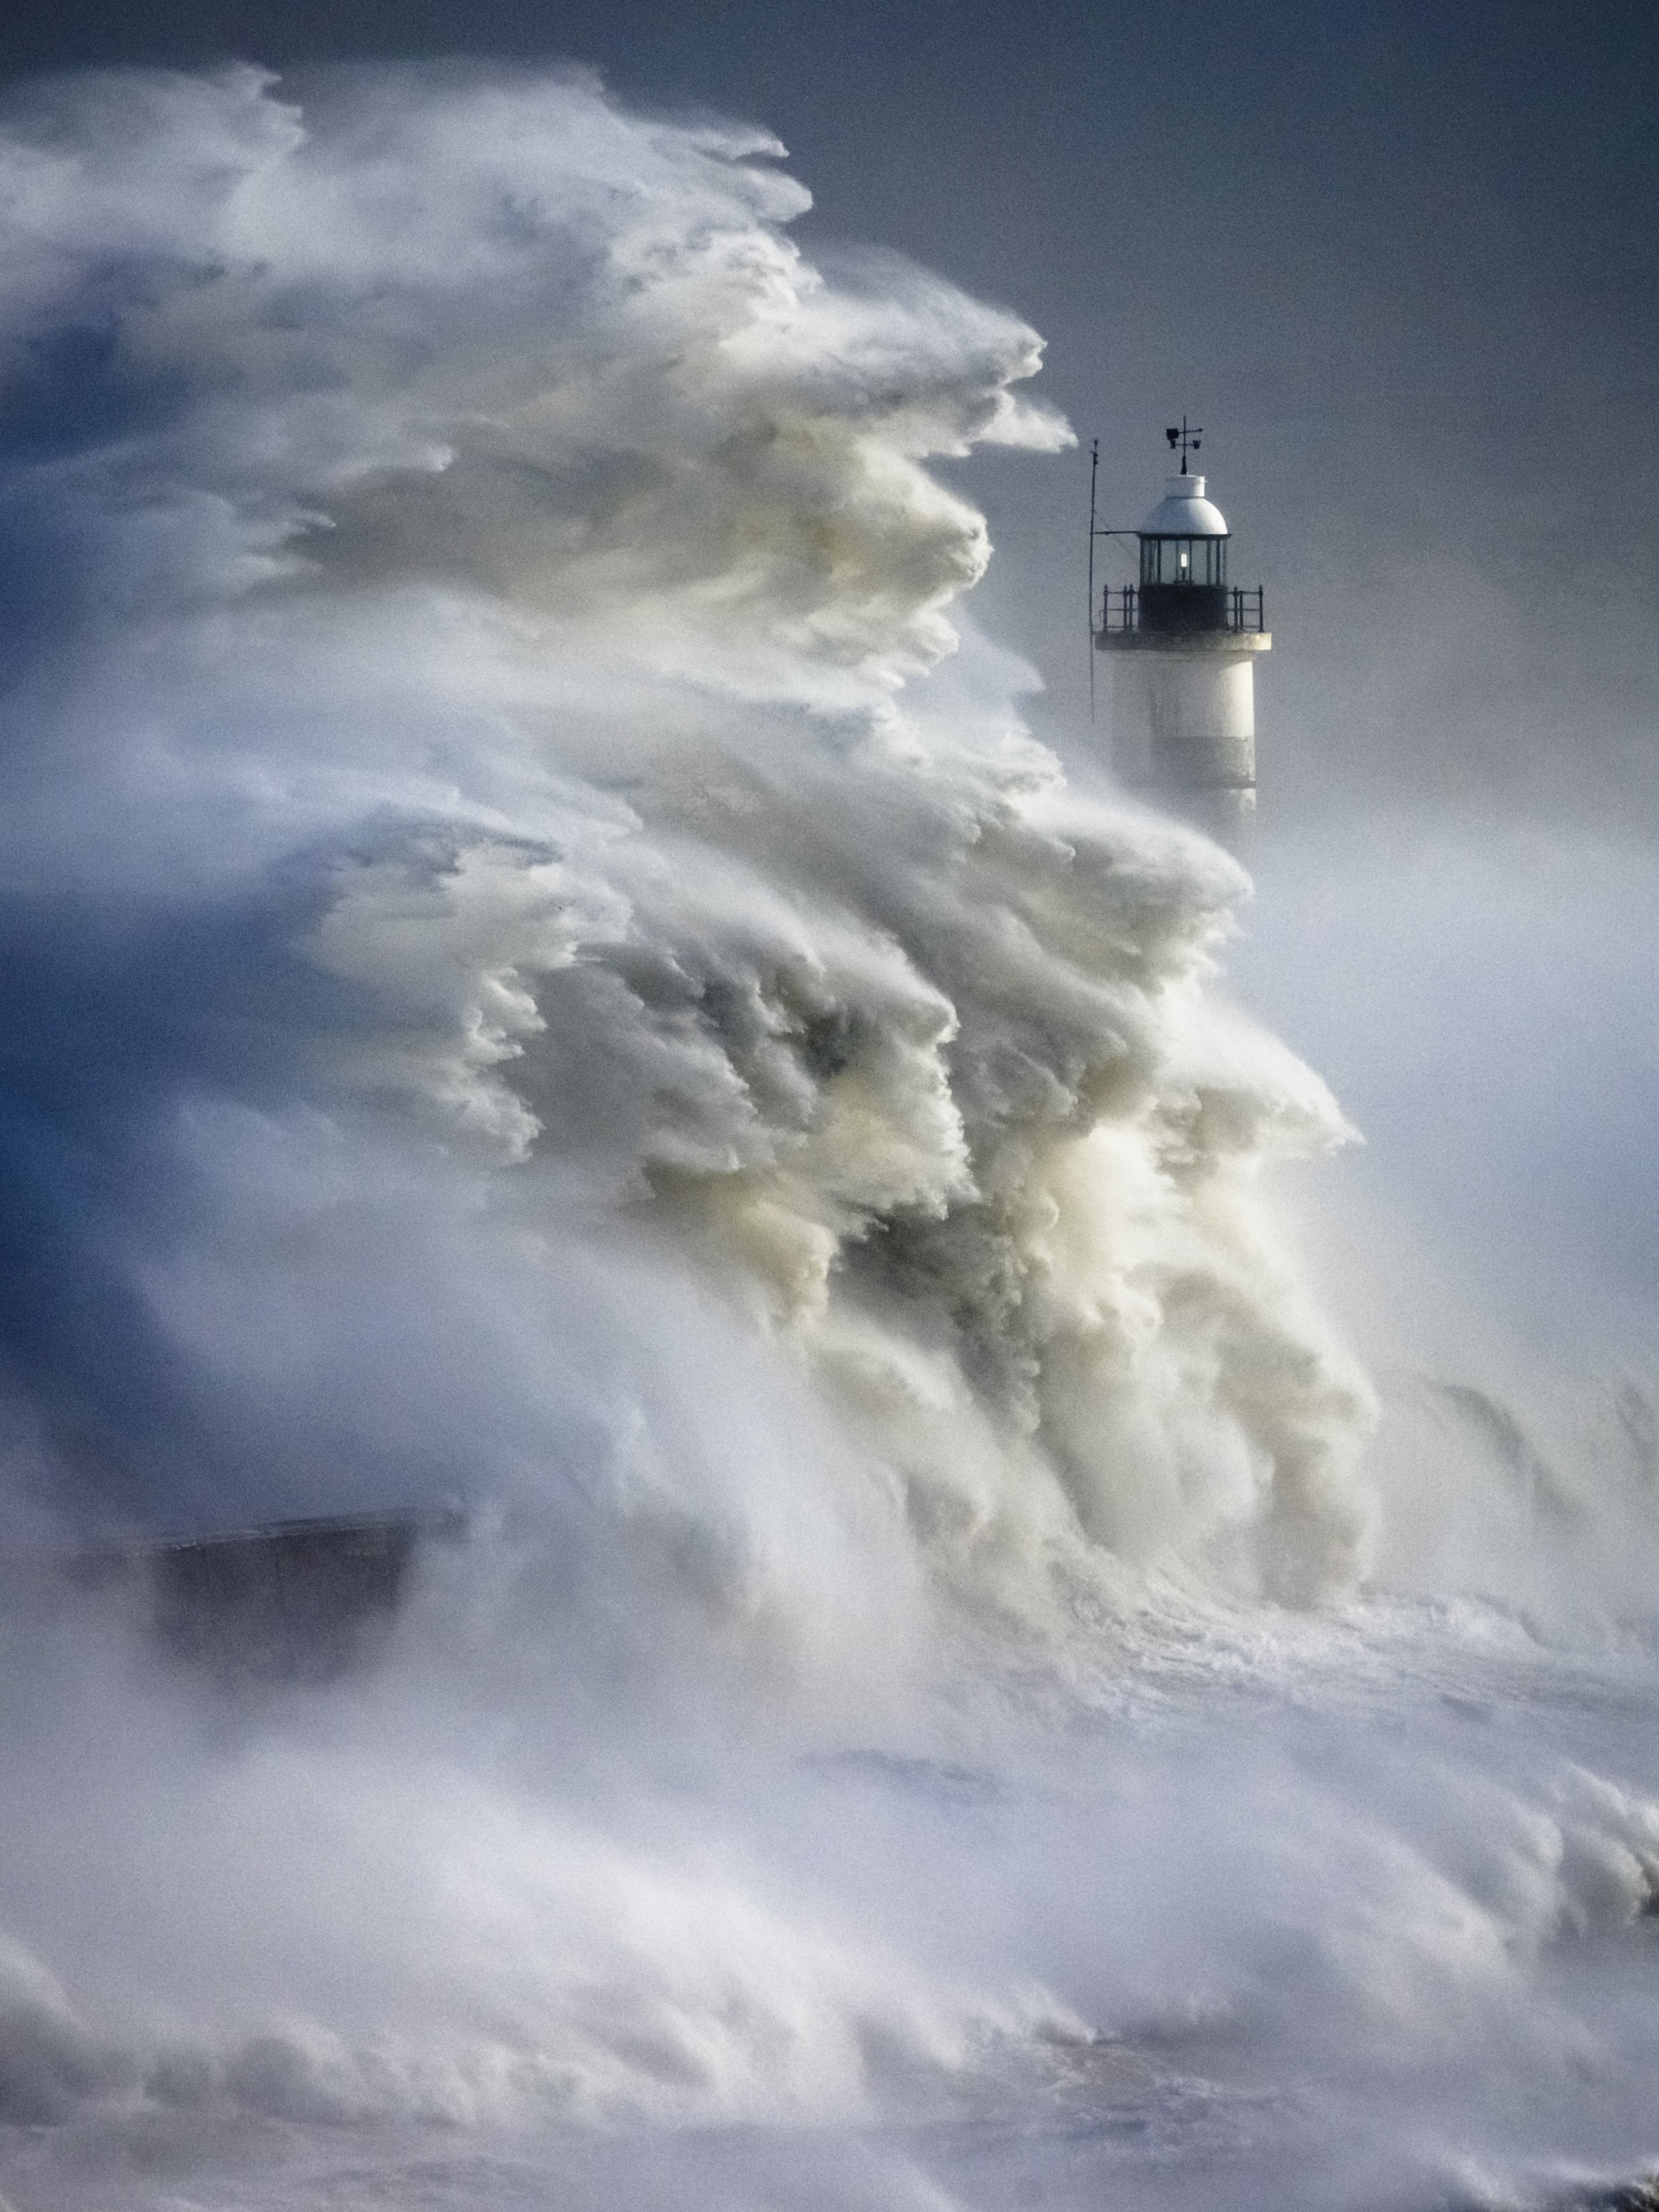 Bức ảnh “Storm Eunice” (Cơn bão Eunice) của nhiếp ảnh gia Christopher Ison. (Ảnh: Đăng dưới sự cho phép của ông Christopher Ison/Hiệp hội Khí tượng Hoàng gia)